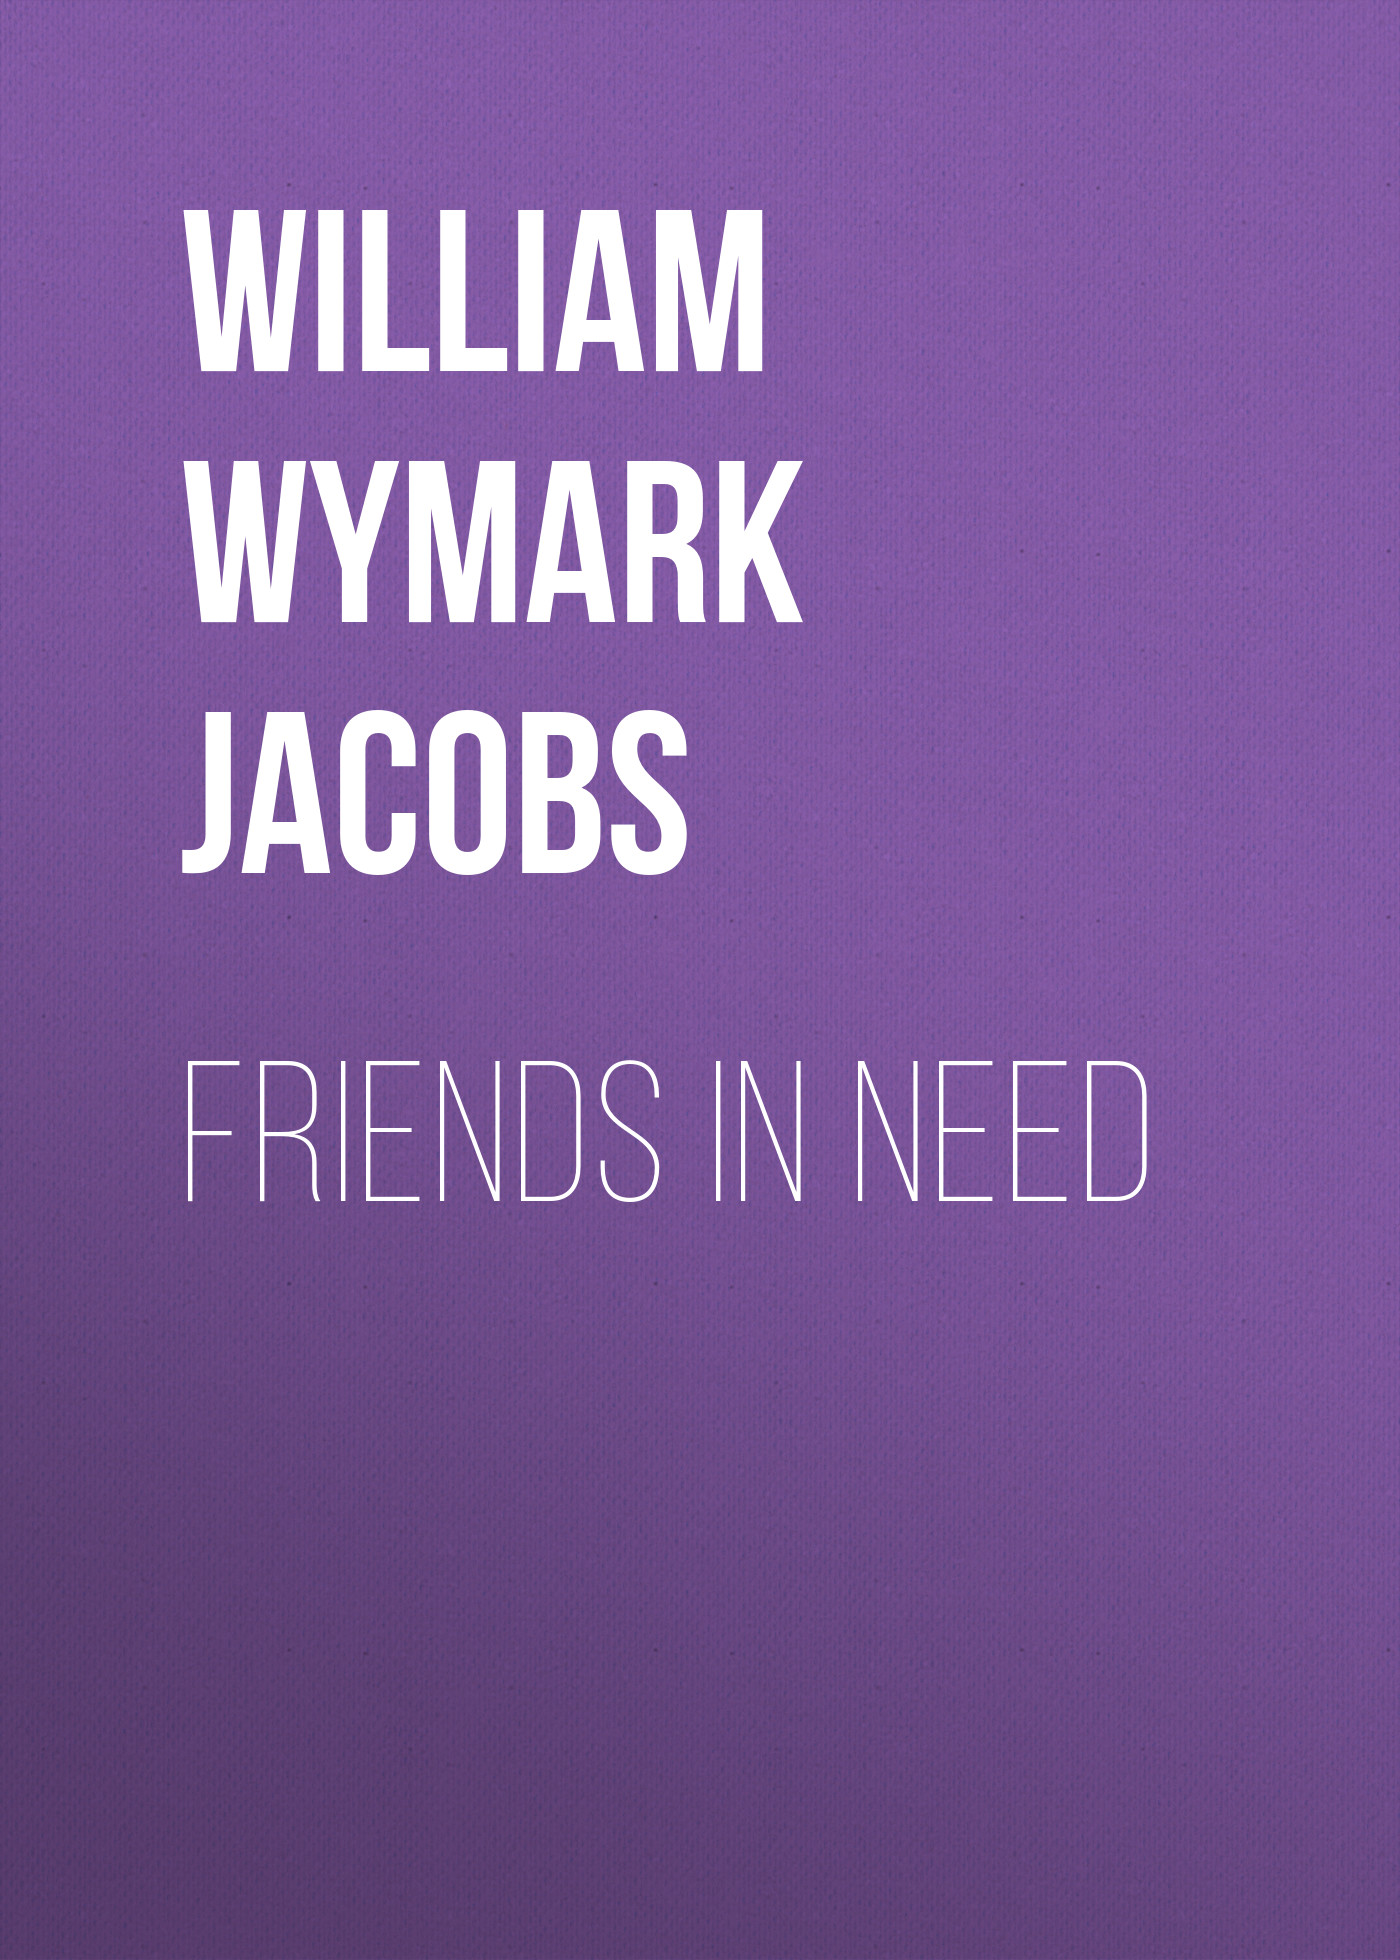 Книга Friends in Need из серии , созданная William Wymark Jacobs, может относится к жанру Зарубежная классика, Зарубежная старинная литература. Стоимость электронной книги Friends in Need с идентификатором 34844062 составляет 0 руб.